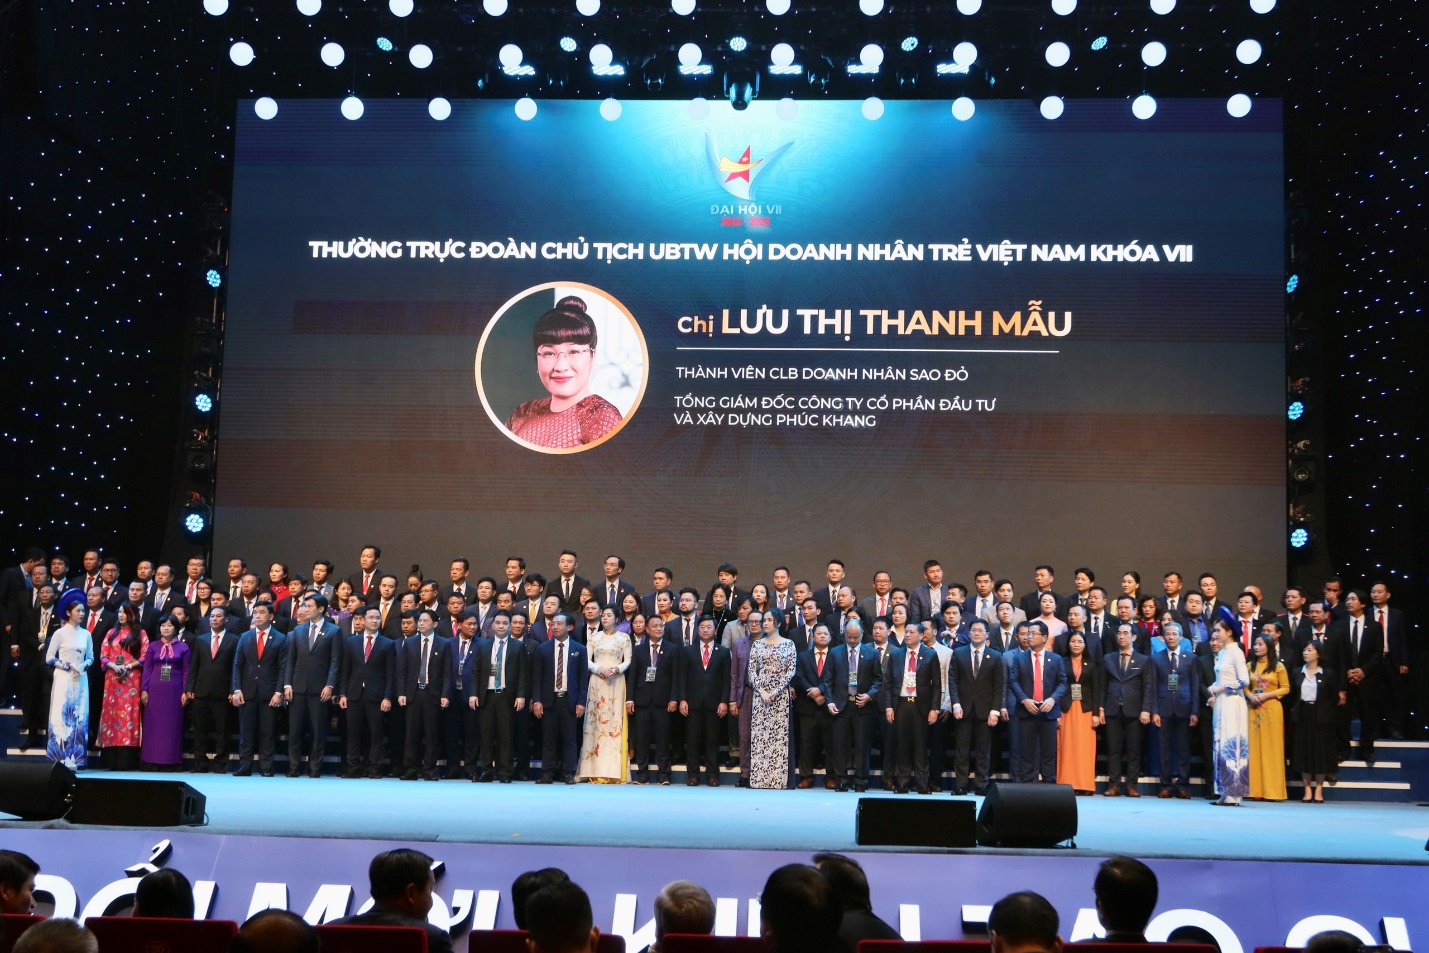 CEO Phuc Khang Corporation - bà Lưu Thị Thanh Mẫu được bầu làm Phó chủ tịch thường trực Trung ương Hội Doanh nhân trẻ Việt Nam khóa VII - Ảnh:Phuc Khang Corporation